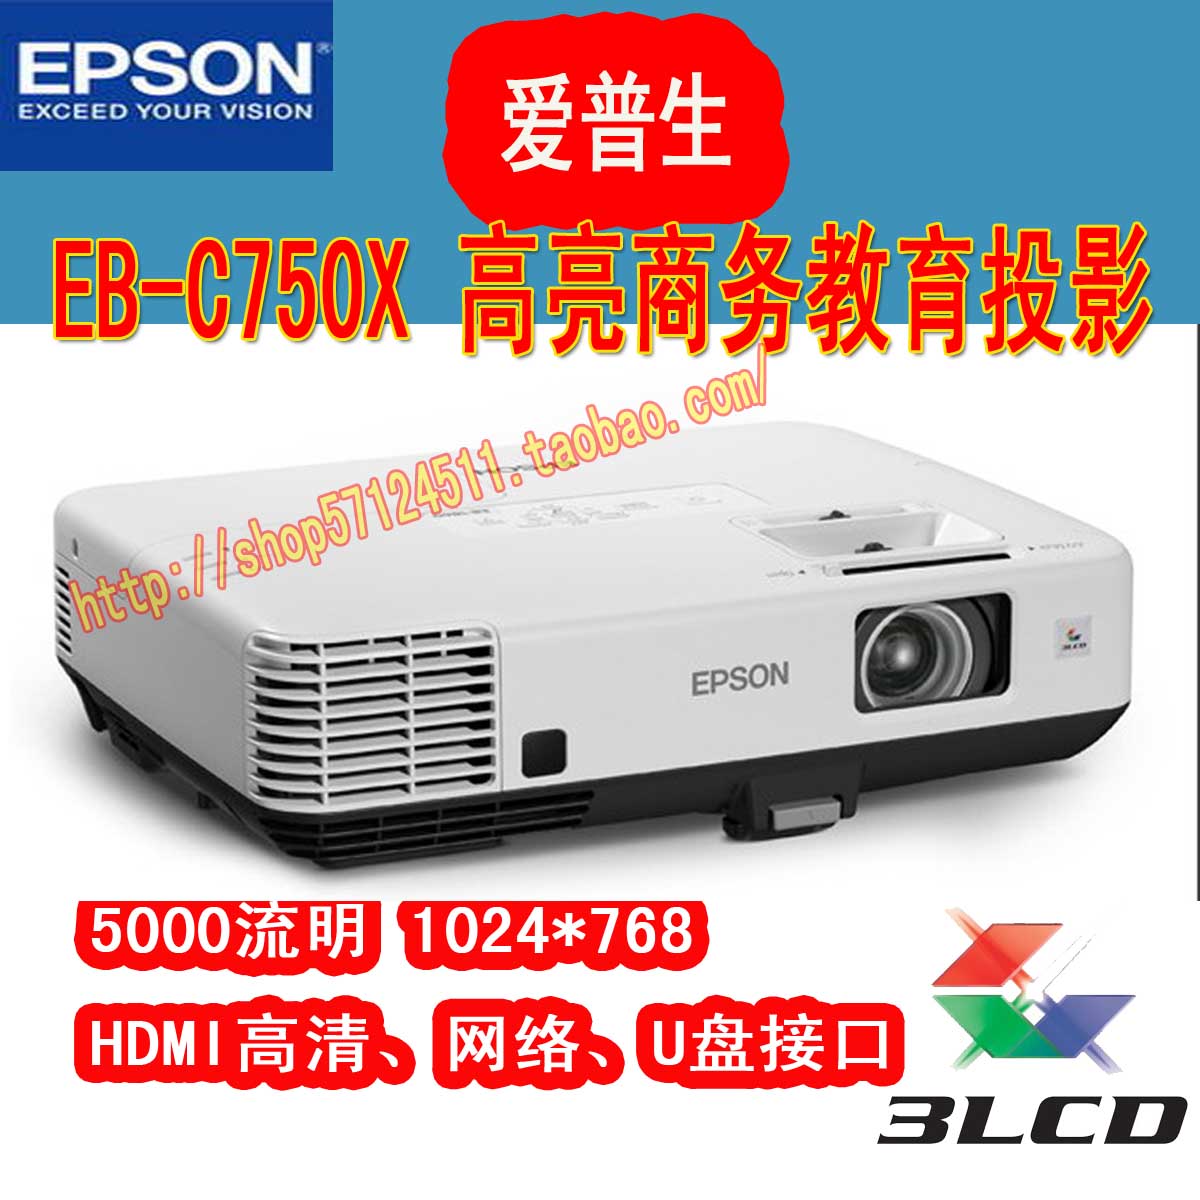 EPSON 爱普生EB-C750X 高清4500流明 1024*768 商务教育投影机